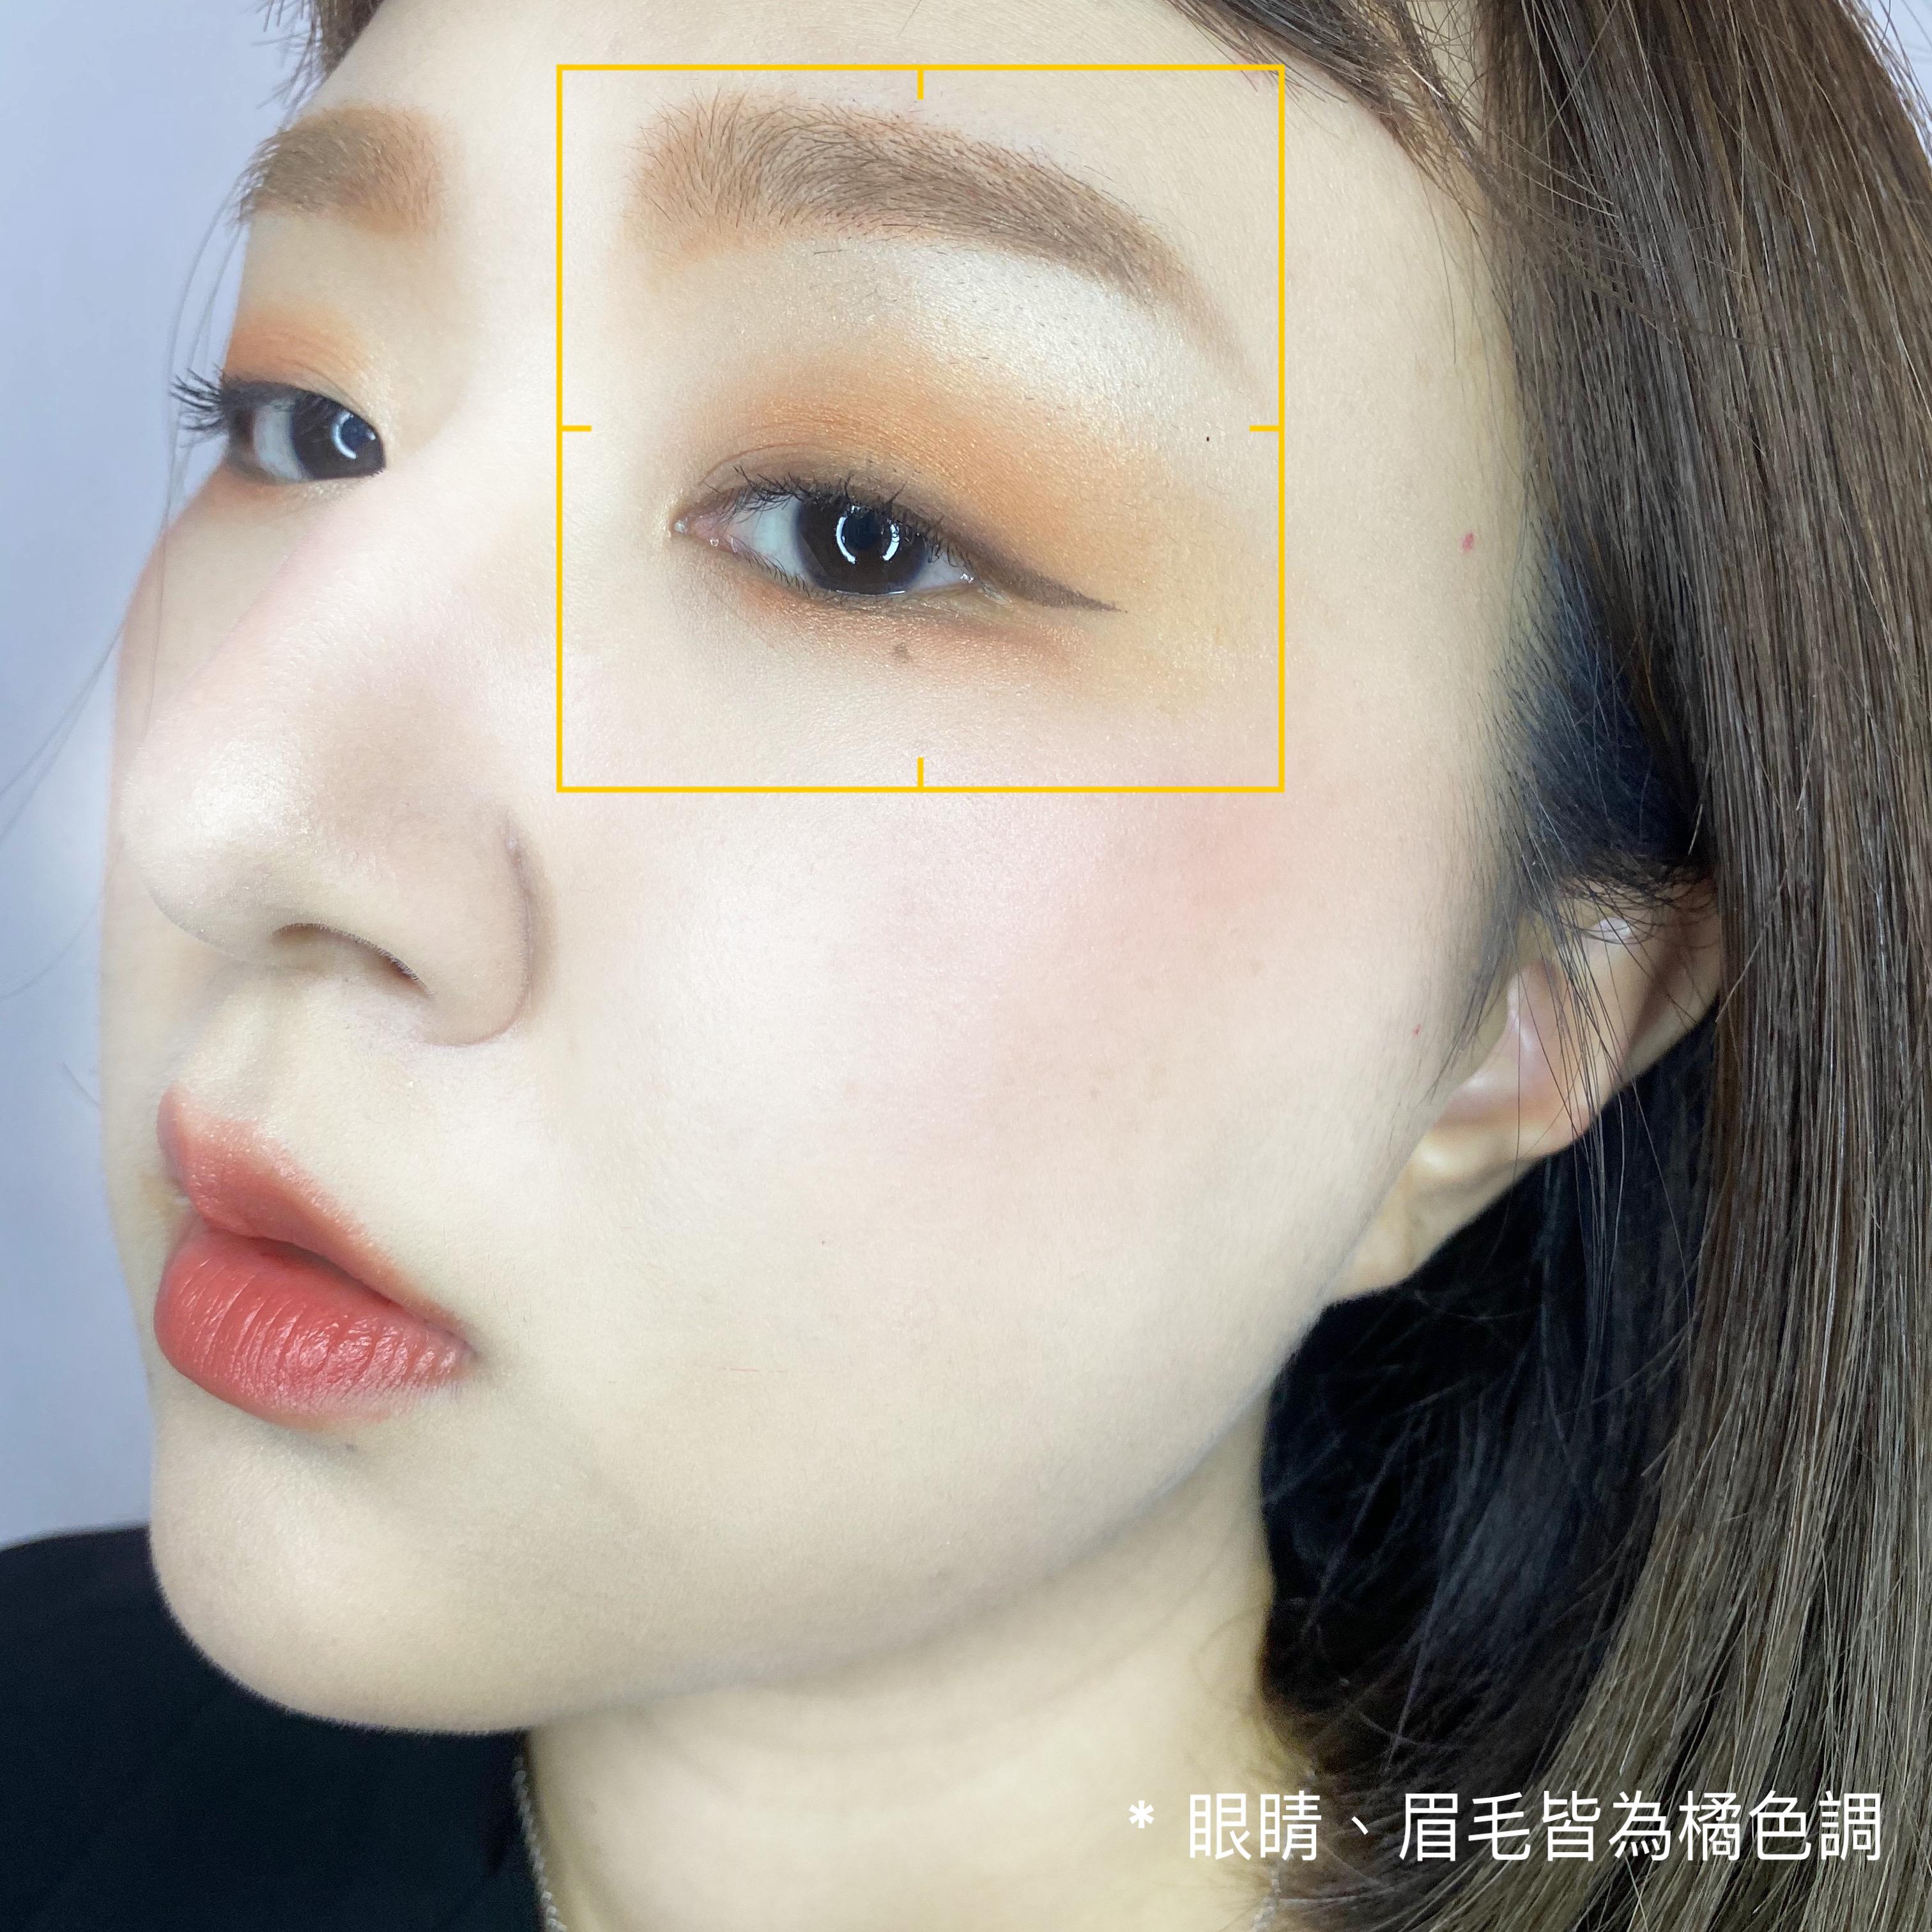 只要在眉毛的眉弓線及眉頭加上一點棕橘色的眼影, 就可以輕鬆打造這樣的眉毛